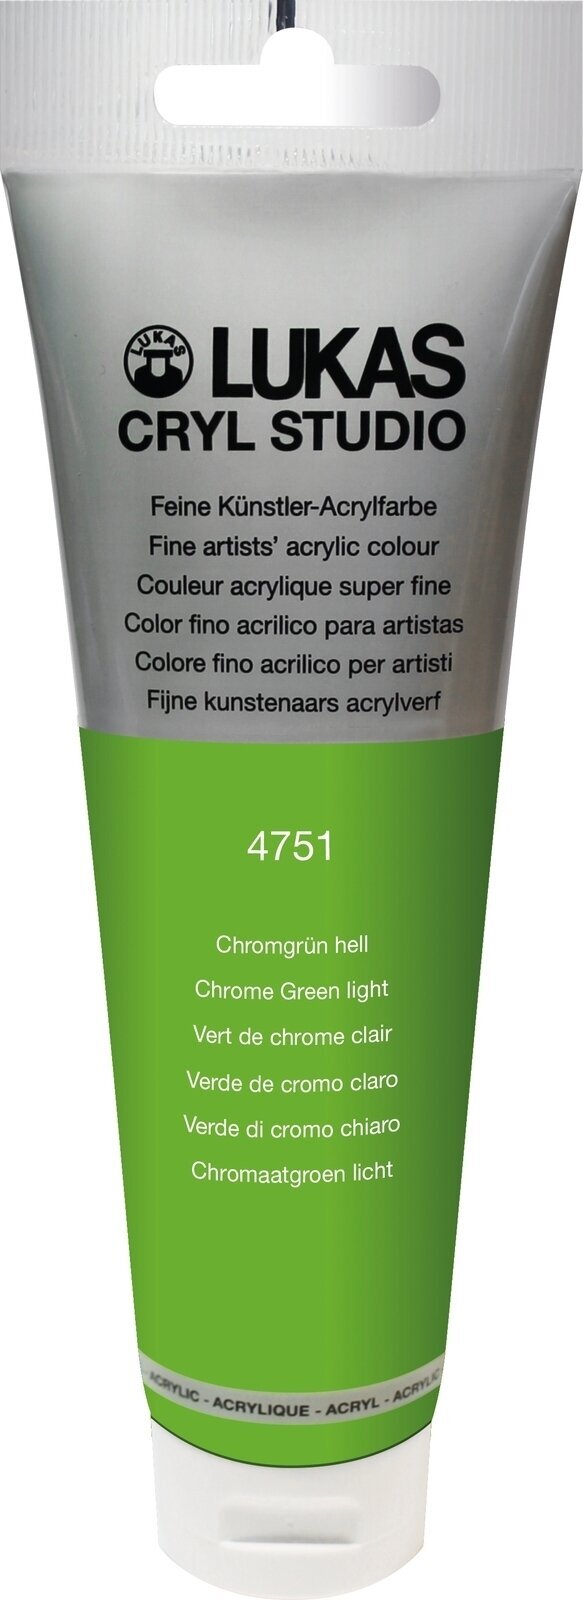 Tinta acrílica Lukas Cryl Studio Acrylic Paint Plastic Tube Tinta acrílica Chrome Green Light 125 ml 1 un.